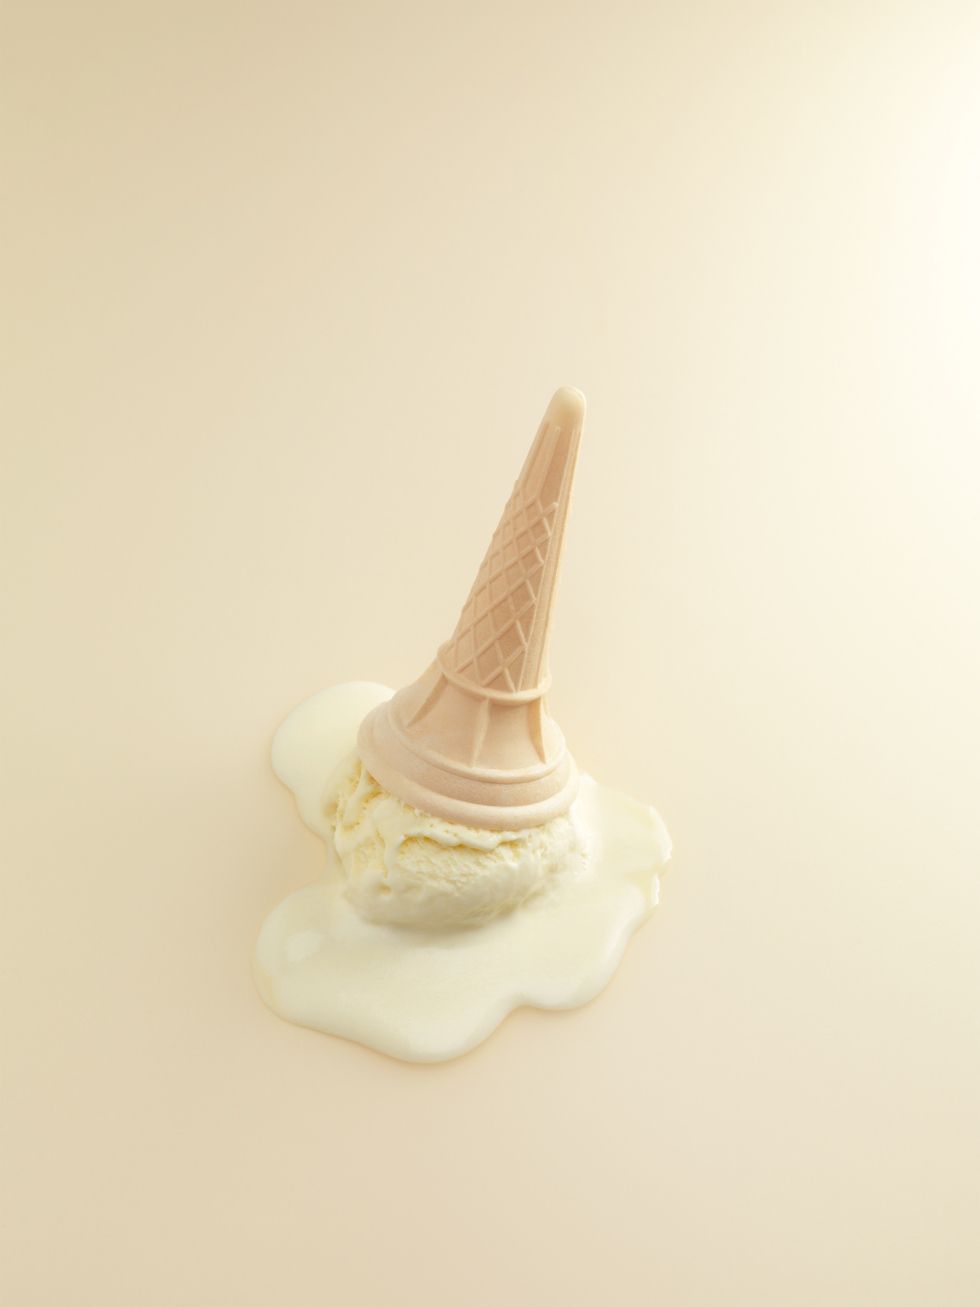 Ice cream for Cereal Magazine. Menu. Ice cream photography, Ice cream design, Cereal magazine